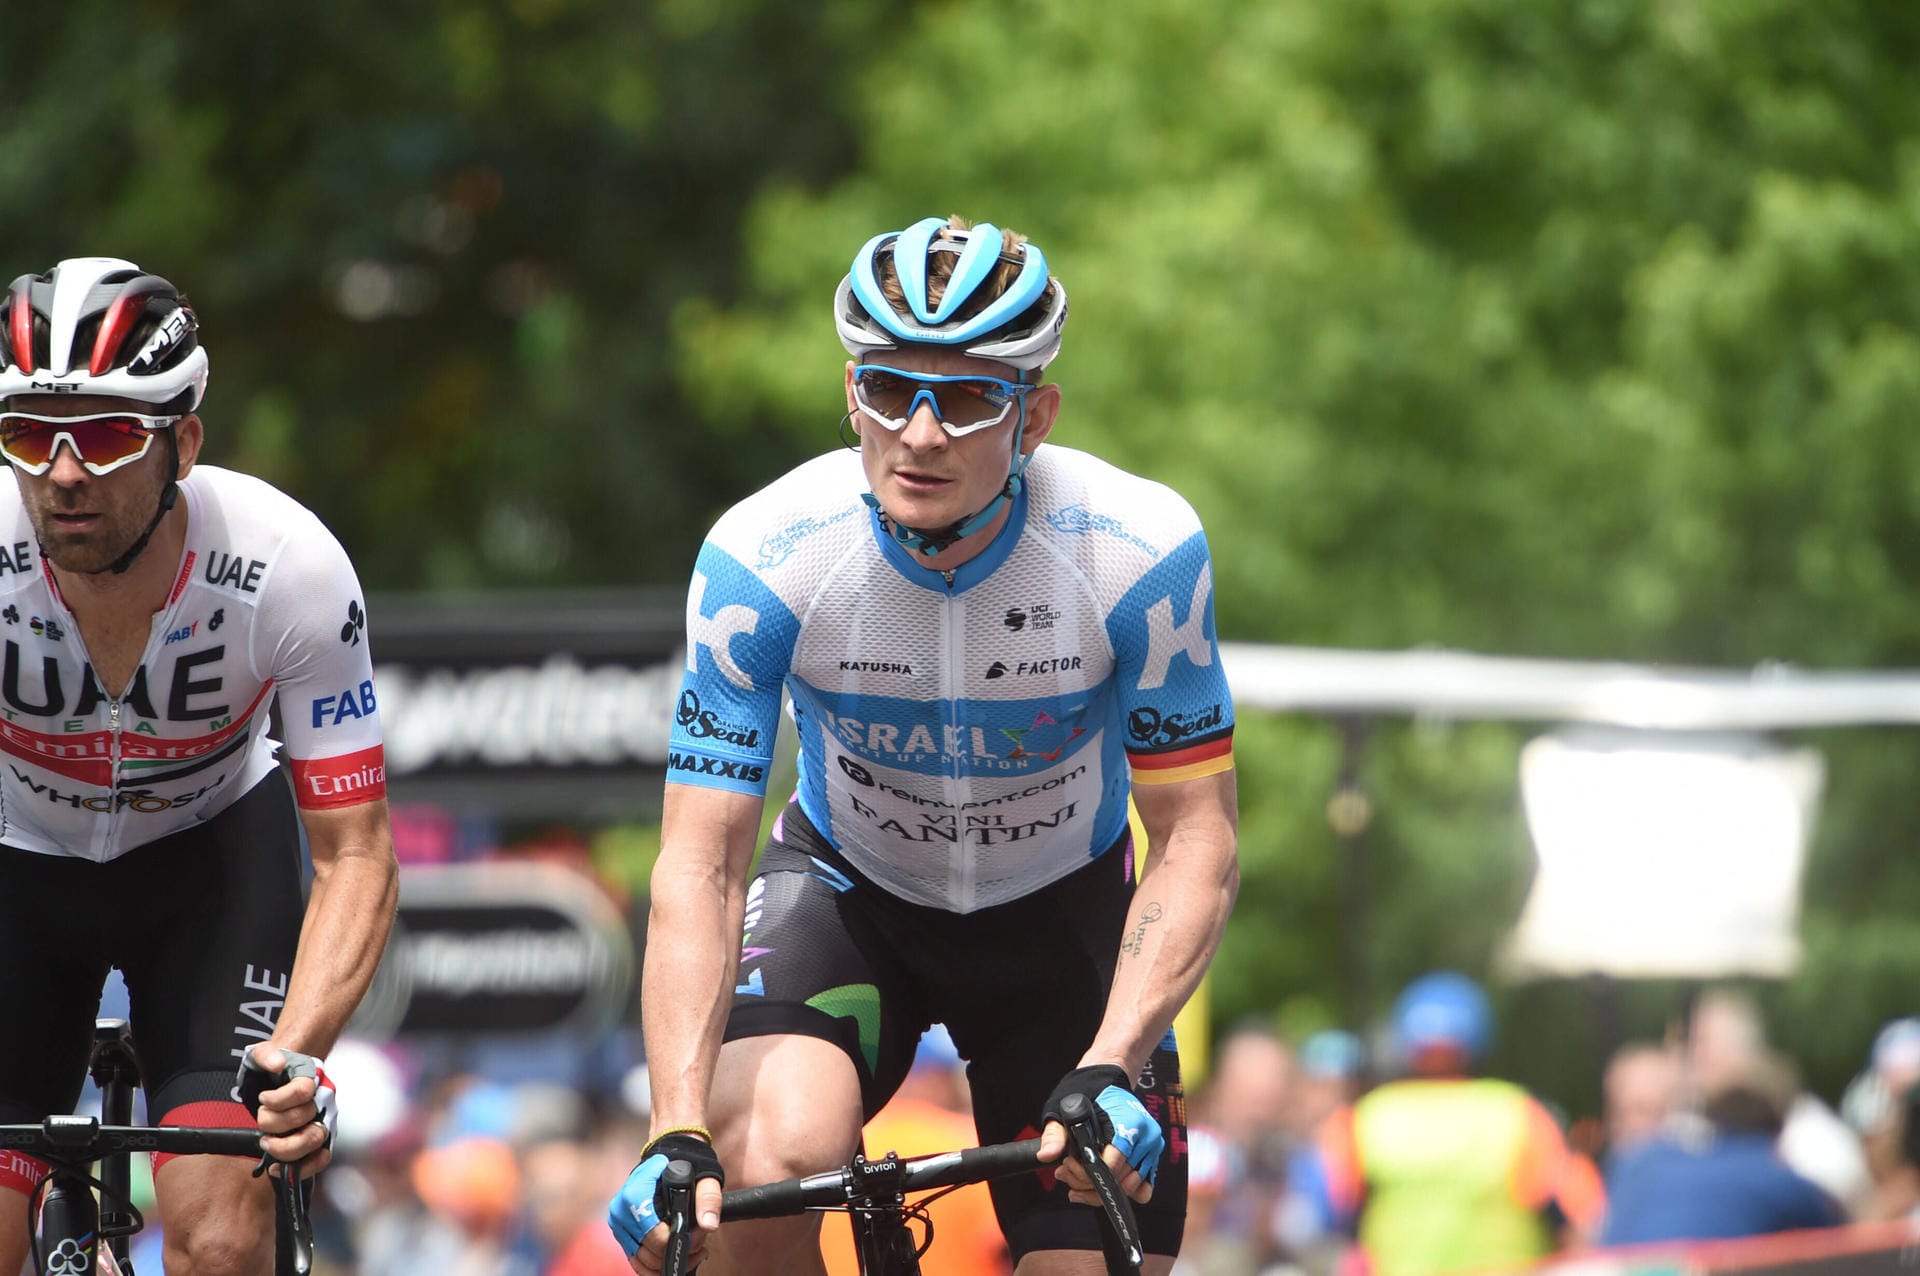 Andre Greipel (Israel Start-up! Nation, gab auf der 18. Etappe auf) - geb. am 16.07.1982 in Rostock - 10. Tour-Teilnahme - Beste Tour-Platzierung: 123. (2012) - Größte Erfolge: Etappensieger Tour de France (2011, 2012/3, 2013, 2014, 2015/4, 2016), Sieger Punktewertung Vuelta (2009), Etappensieger Vuelta (2009/4), Etappensieger Giro d'Italia (2008, 2010, 2015, 2016/3, 2017), Deutscher Meister (2013, 2014, 2016) - Profisiege: 156